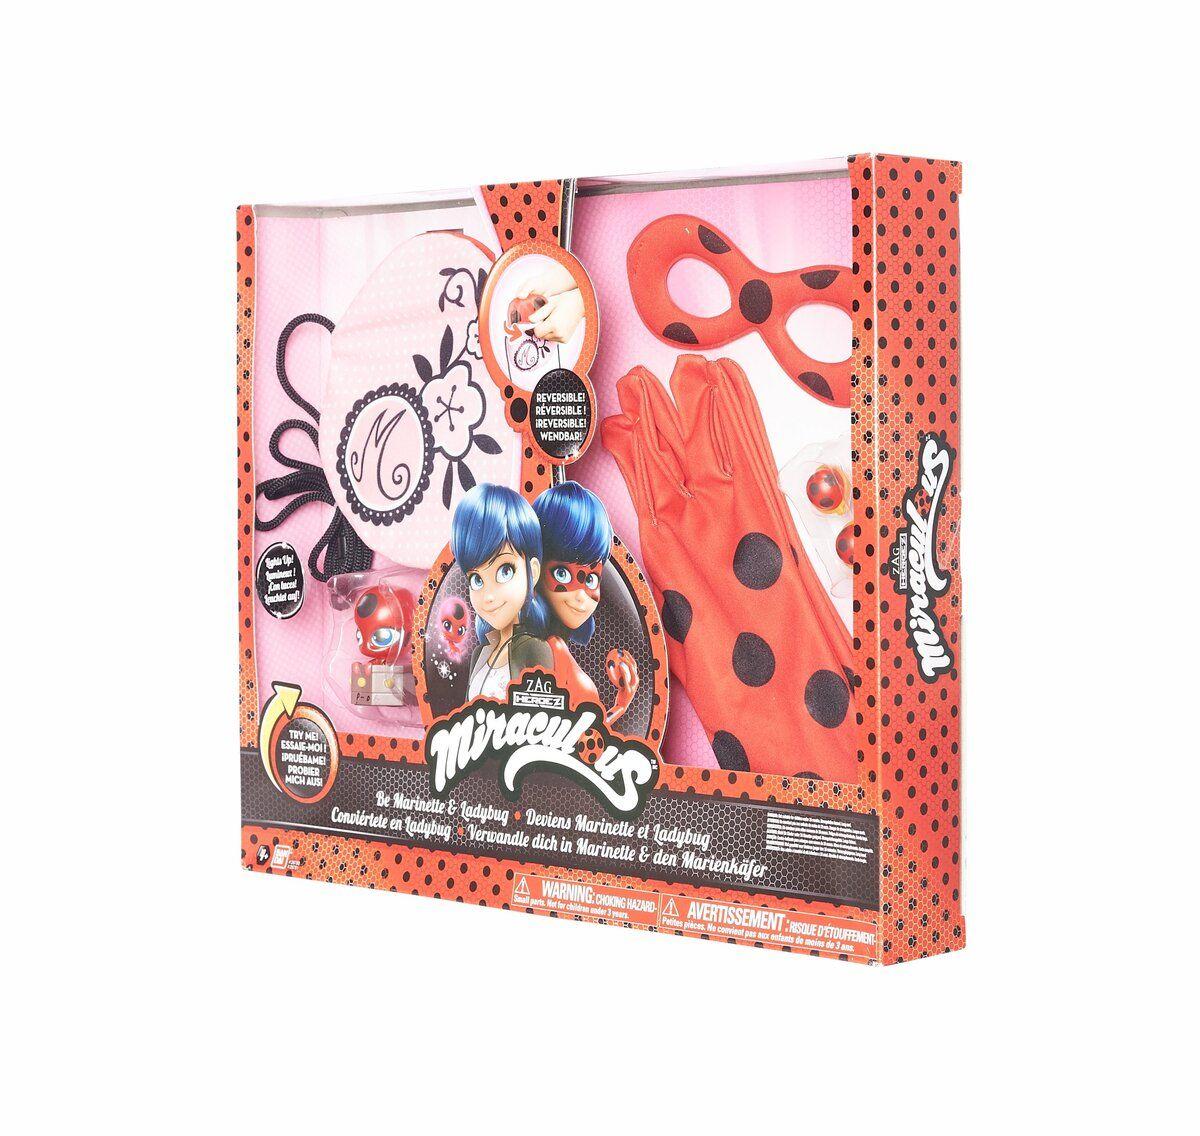 Promo Miraculous téléphone magique de ladybug chez Auchan